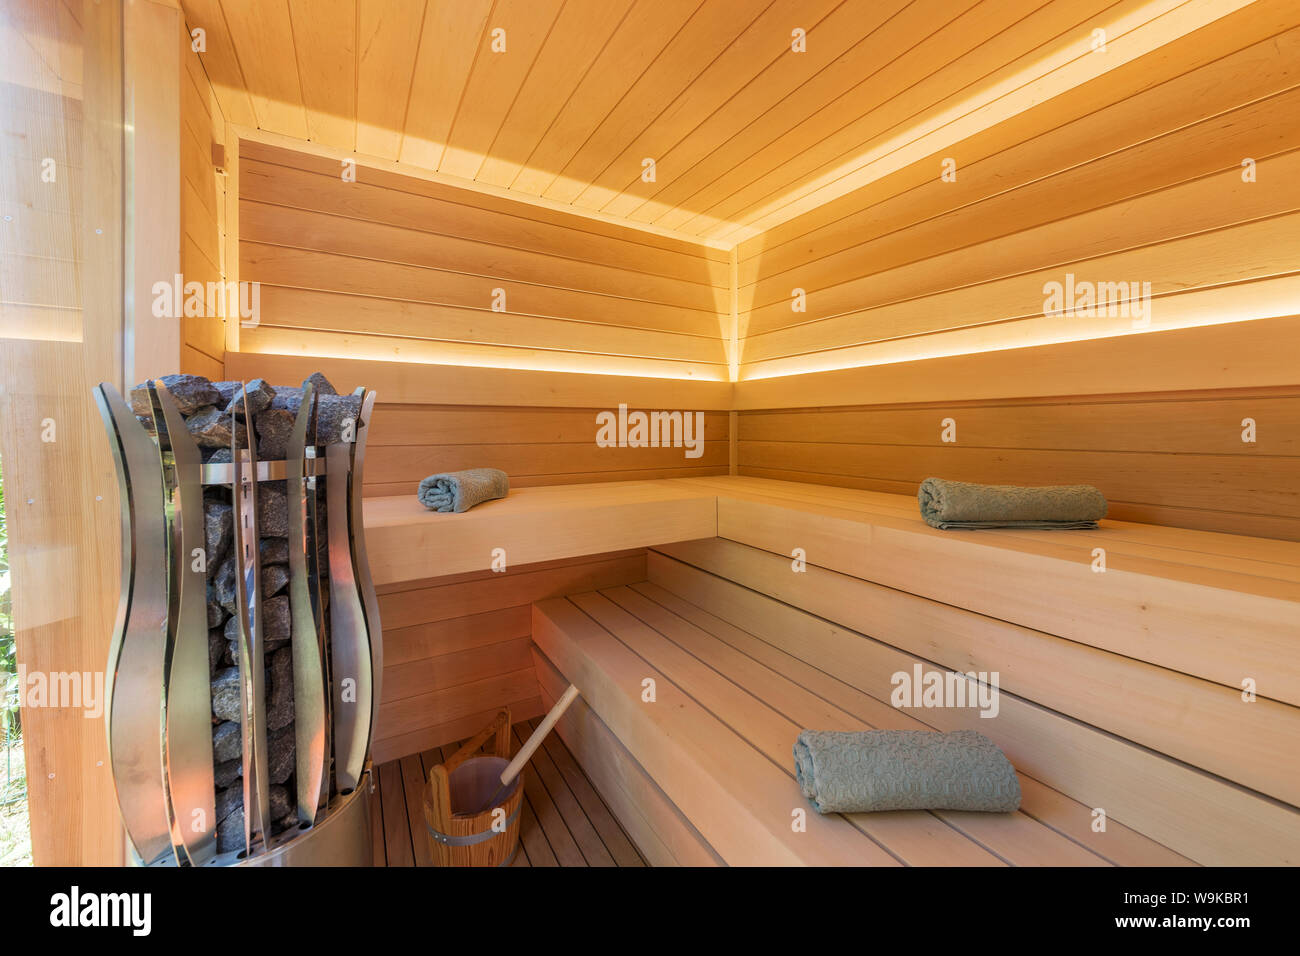 Interior de sauna finlandesa. Vista frontal de la clásica sauna de